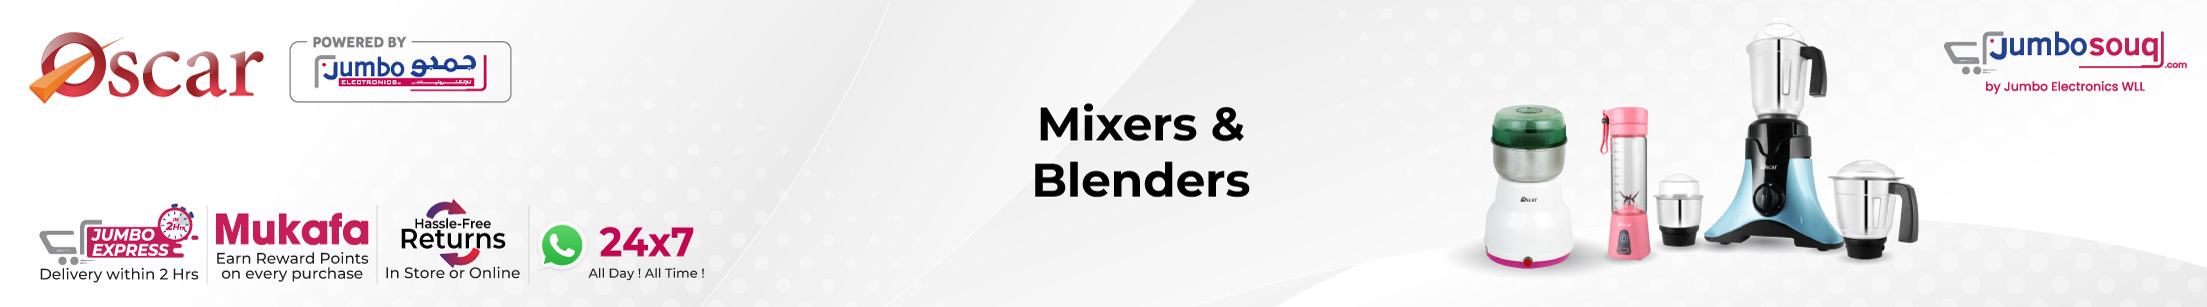 Mixers Grinders & Blenders